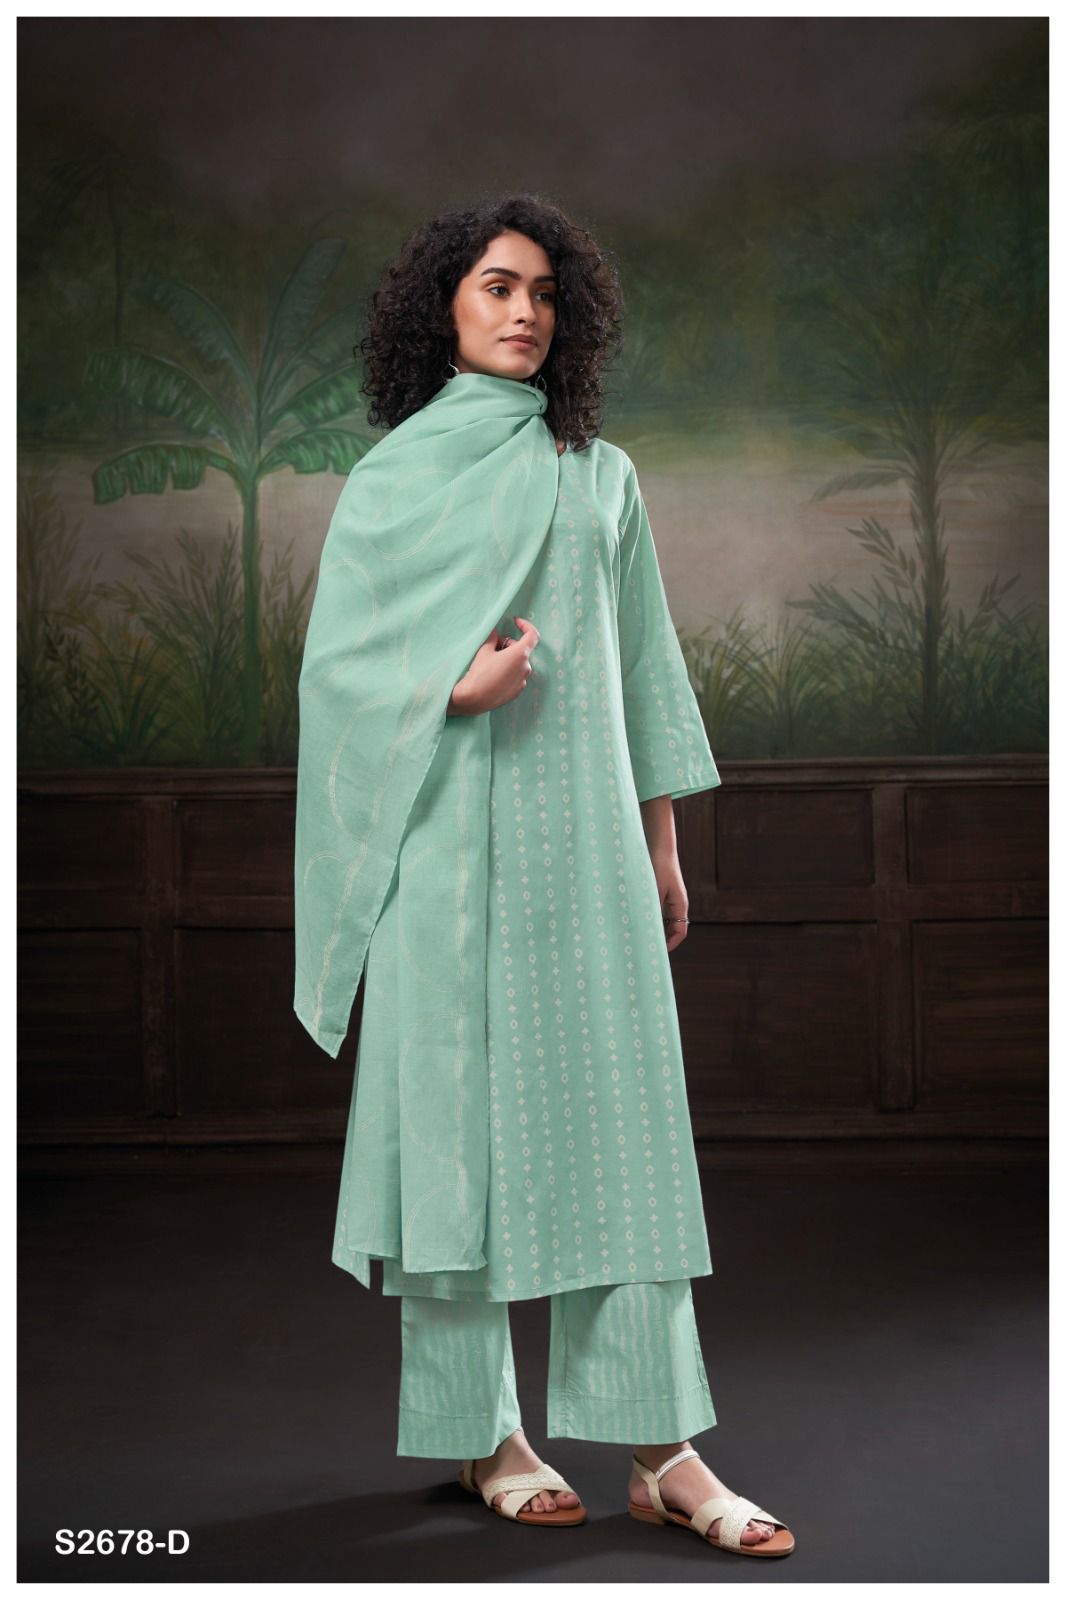 Shivika 2678 Ganga Cotton Plazzo Style Suits Wholesale